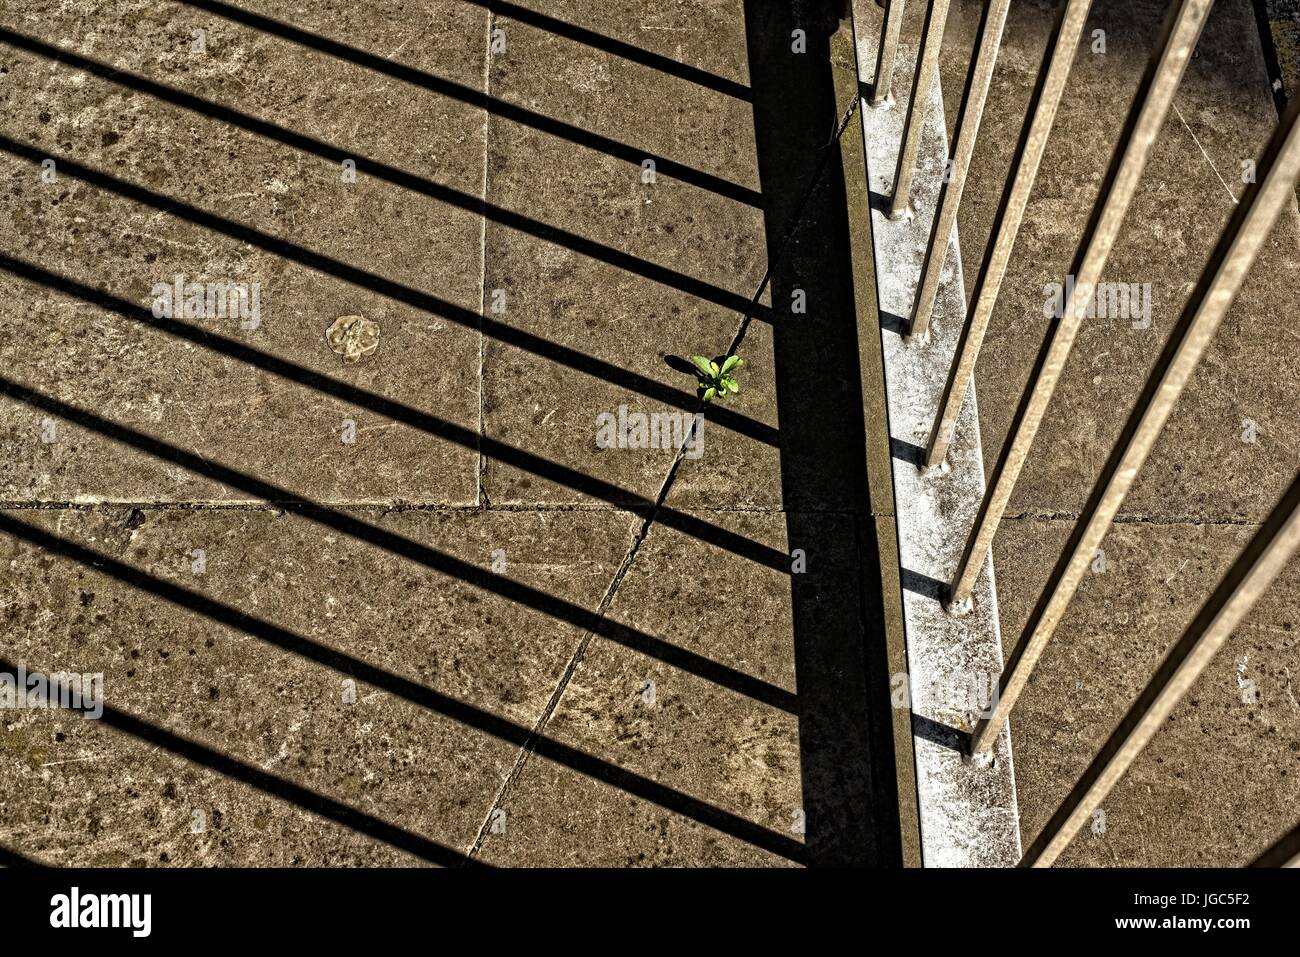 Imagen abstracta del crecimiento de la planta sobre losas de pavimentación estériles, un sobreviviente solitario contra el hormigón Foto de stock